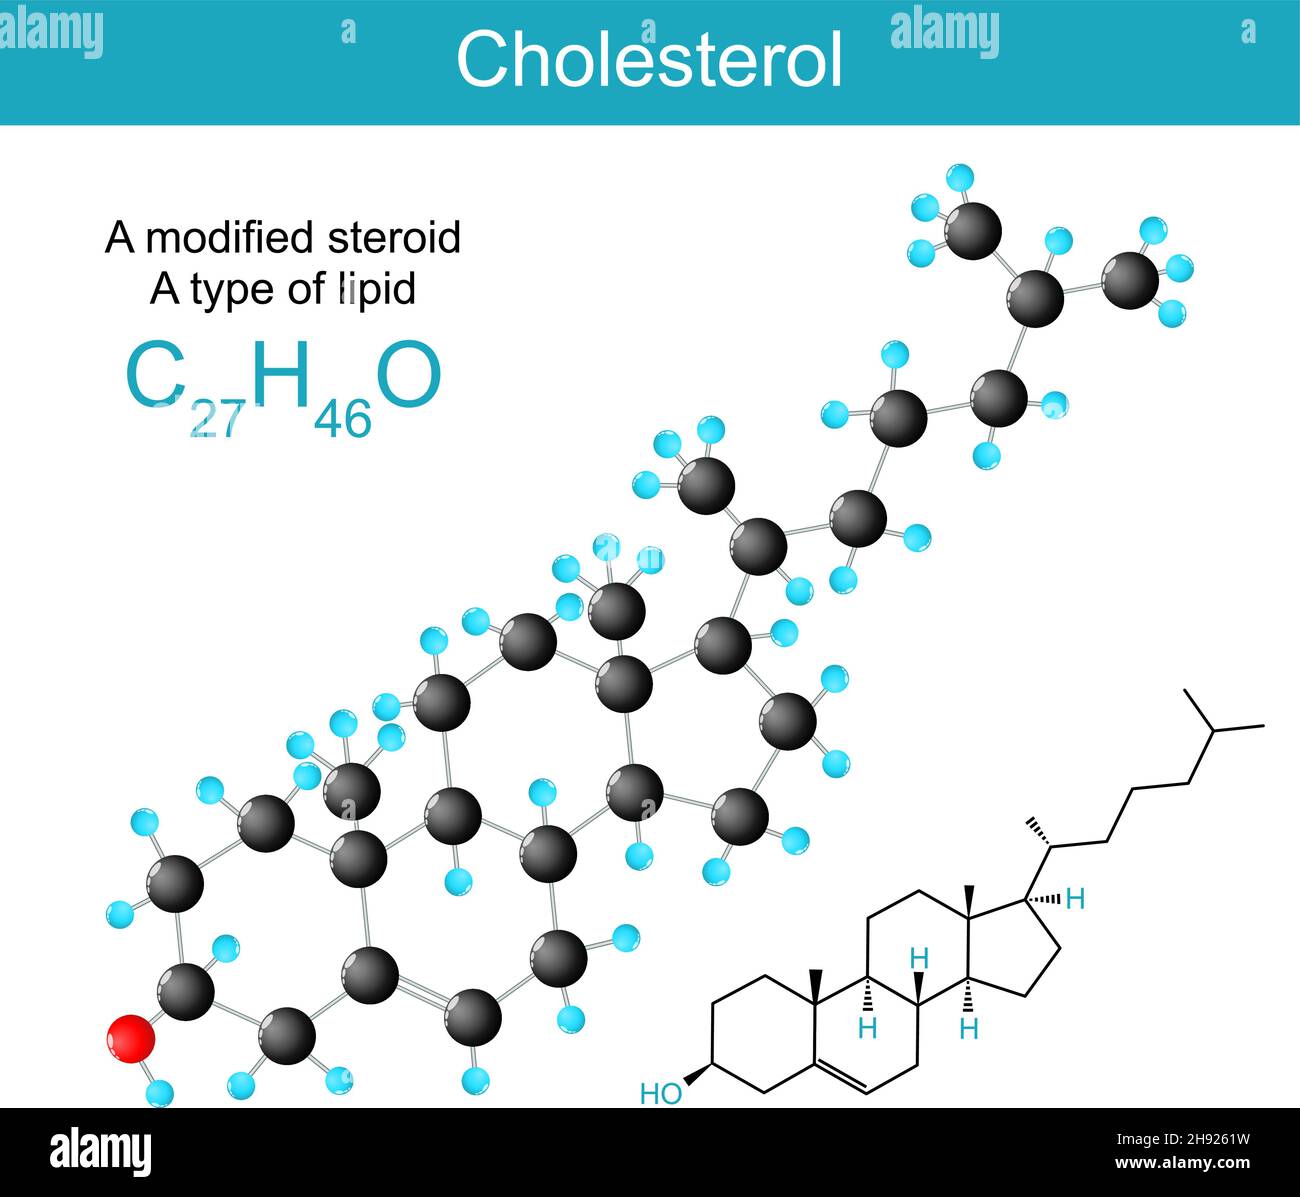 Cholesterin molekularchemische Strukturformel und Modell eines Sterols (oder modifiziertes Steroid). Typ des Lipids. Vektorgrafik Stock Vektor